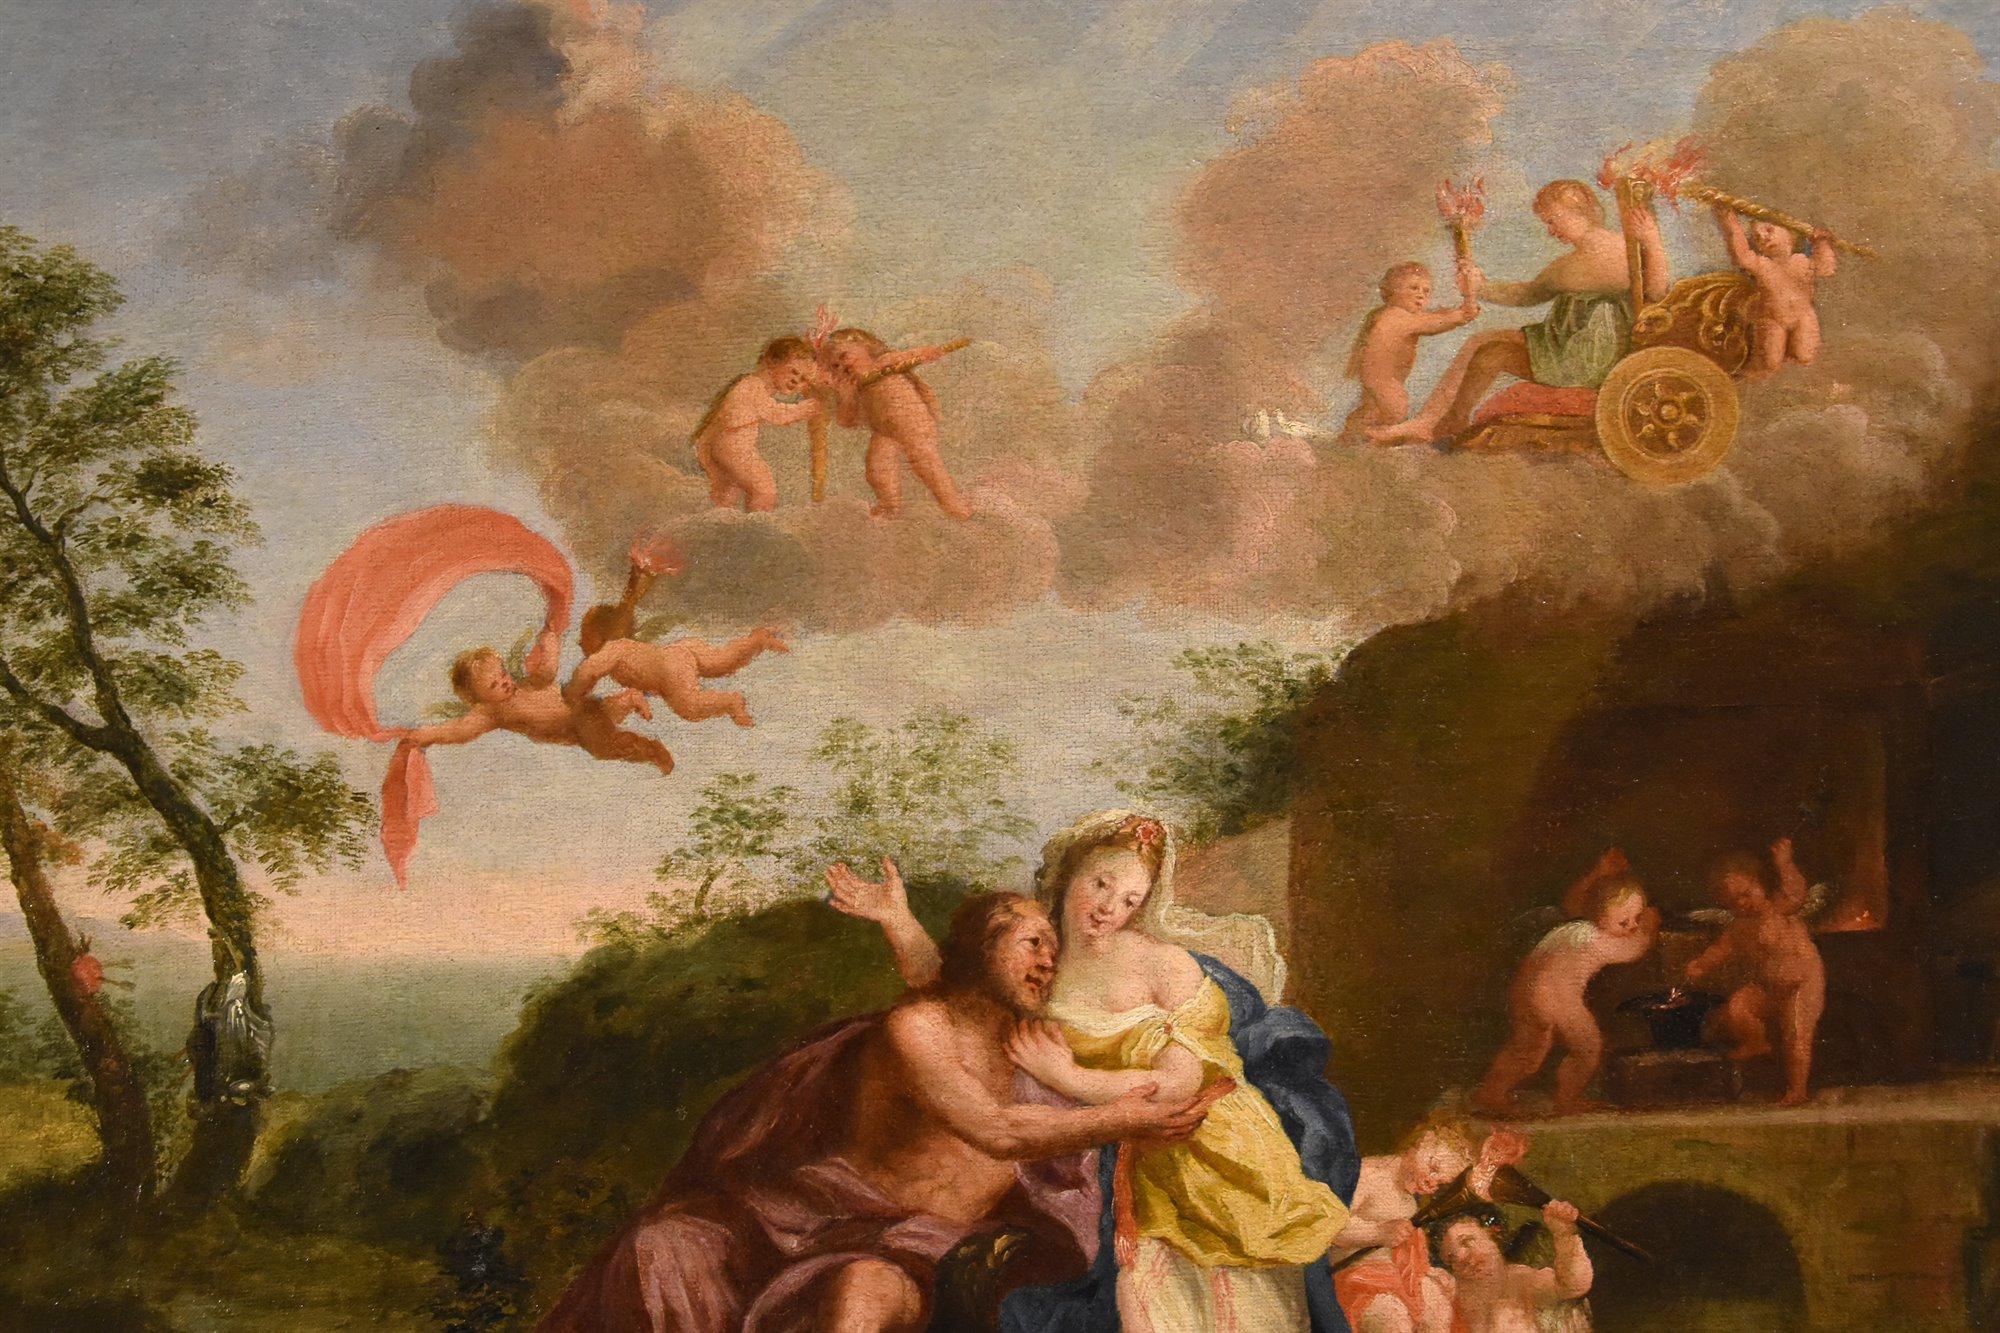 Mars Venus Albani Paint Oil on canvas 17th Century Old master Mythological For Sale 8